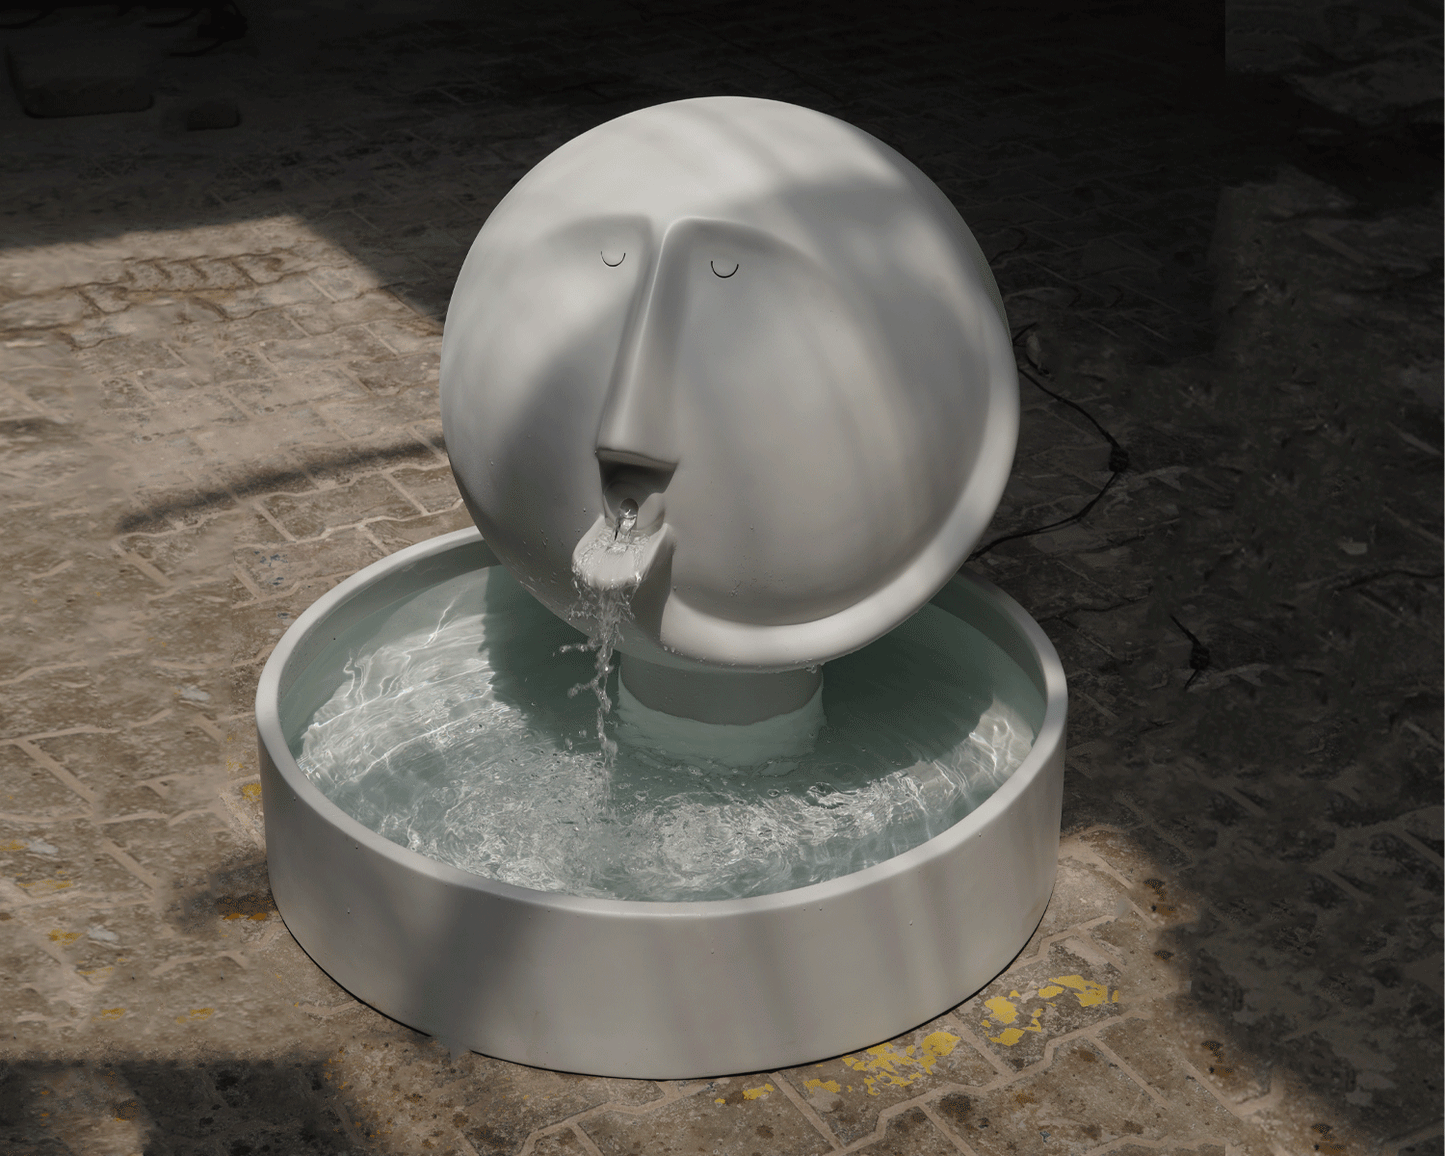 Blown Away Fountain Sculpture